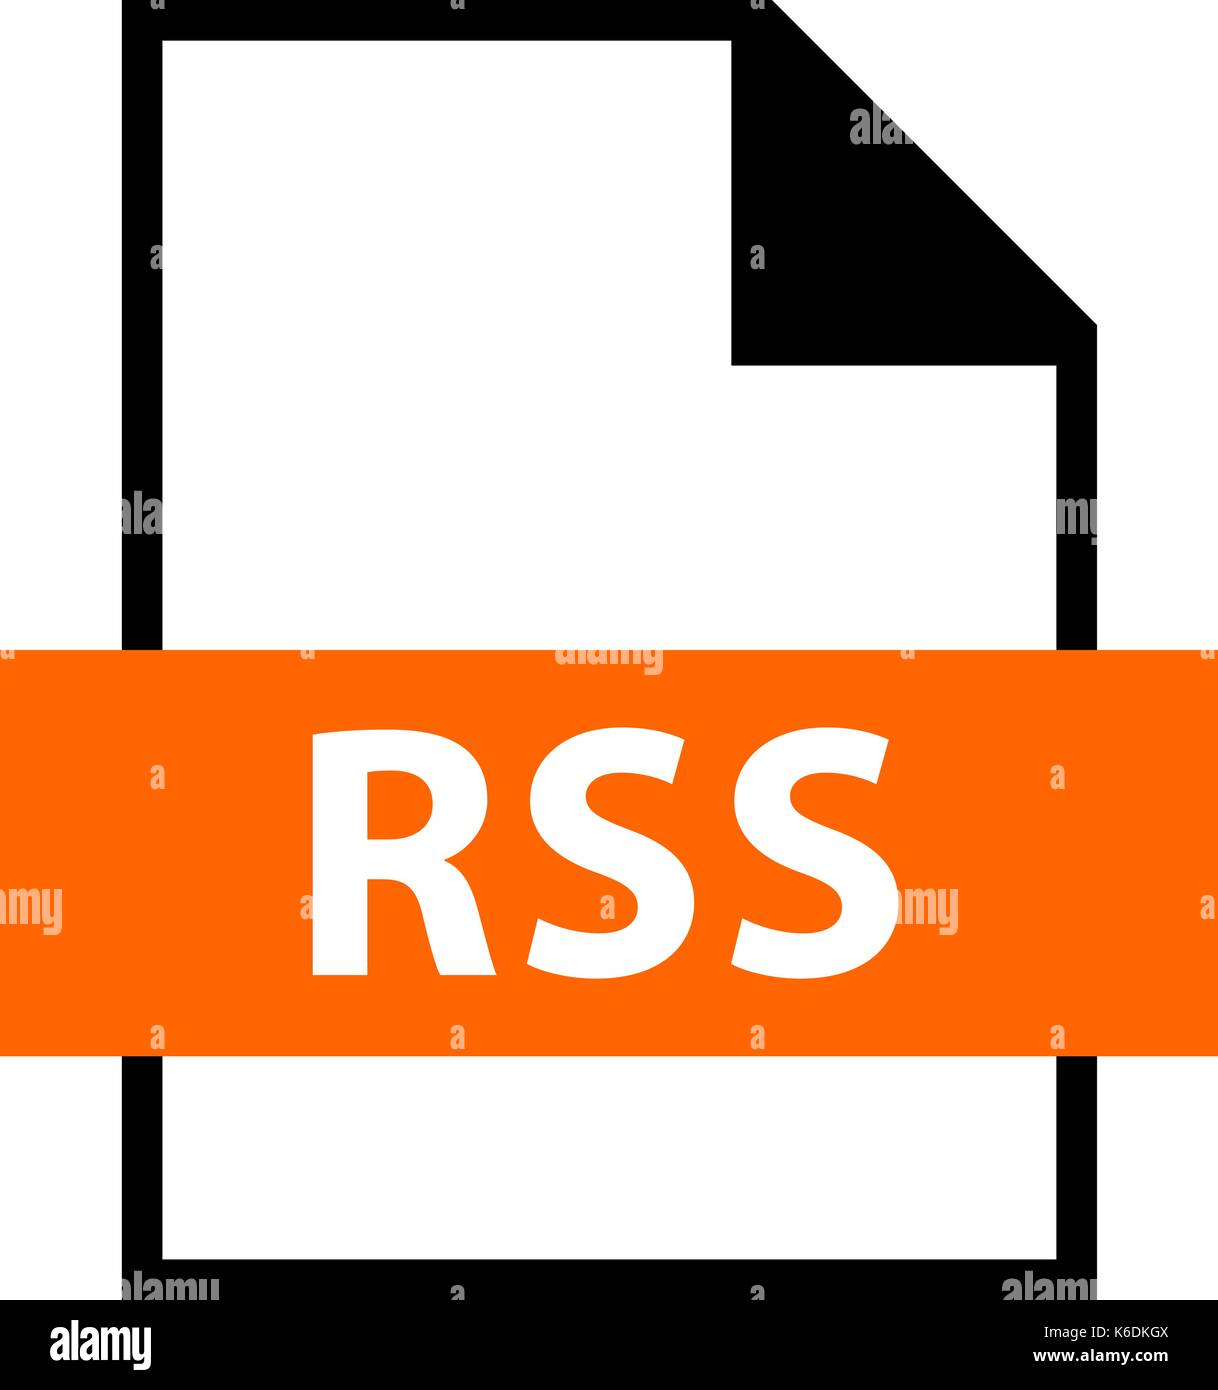 Es in allen ihren Designs verwenden. Dateinamenerweiterung Symbol RSS Rich Site Summary oder Really Simple Syndication im flachen Stil. Schnelle und einfache Form recolorable Stock Vektor